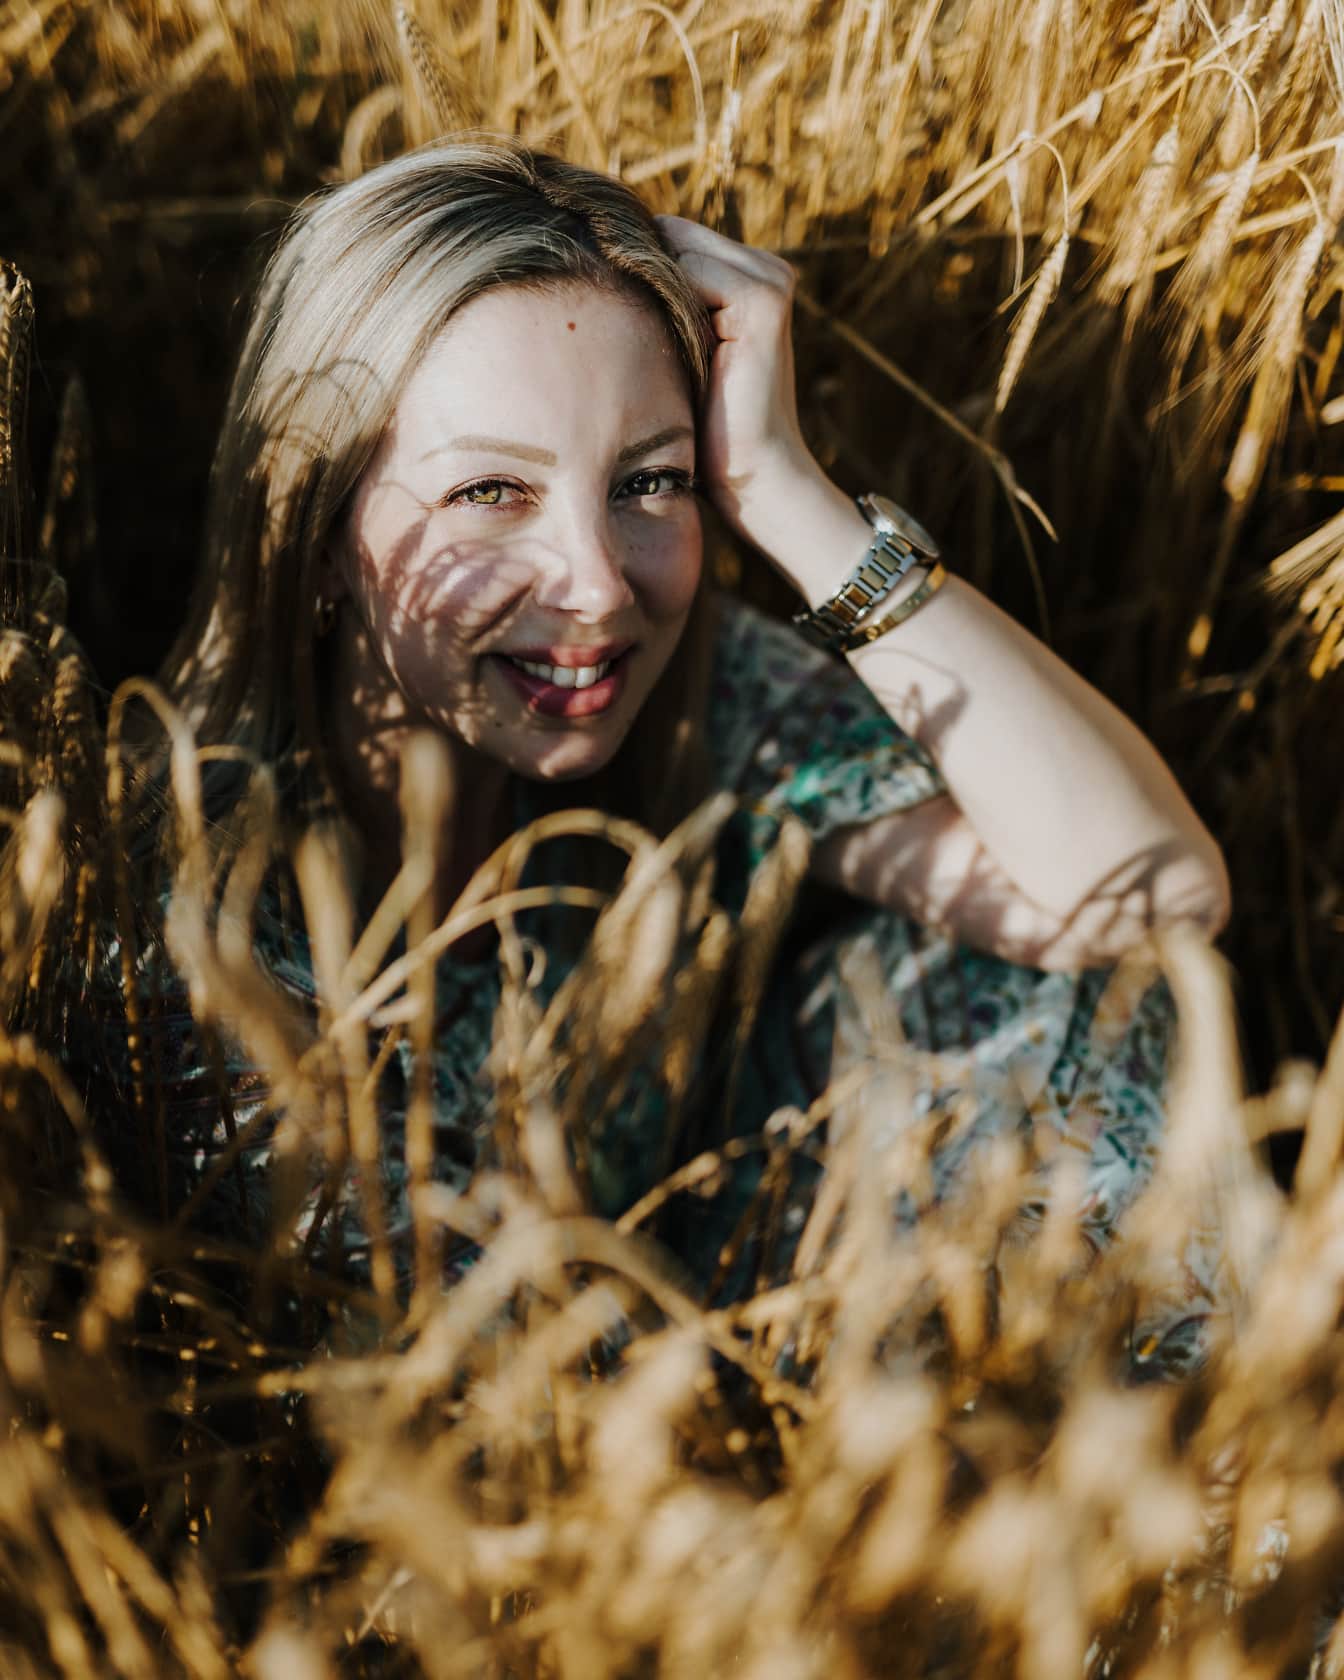 Ładnie wyglądająca kobieta siedząca na polu pszenicy i uśmiechnięta